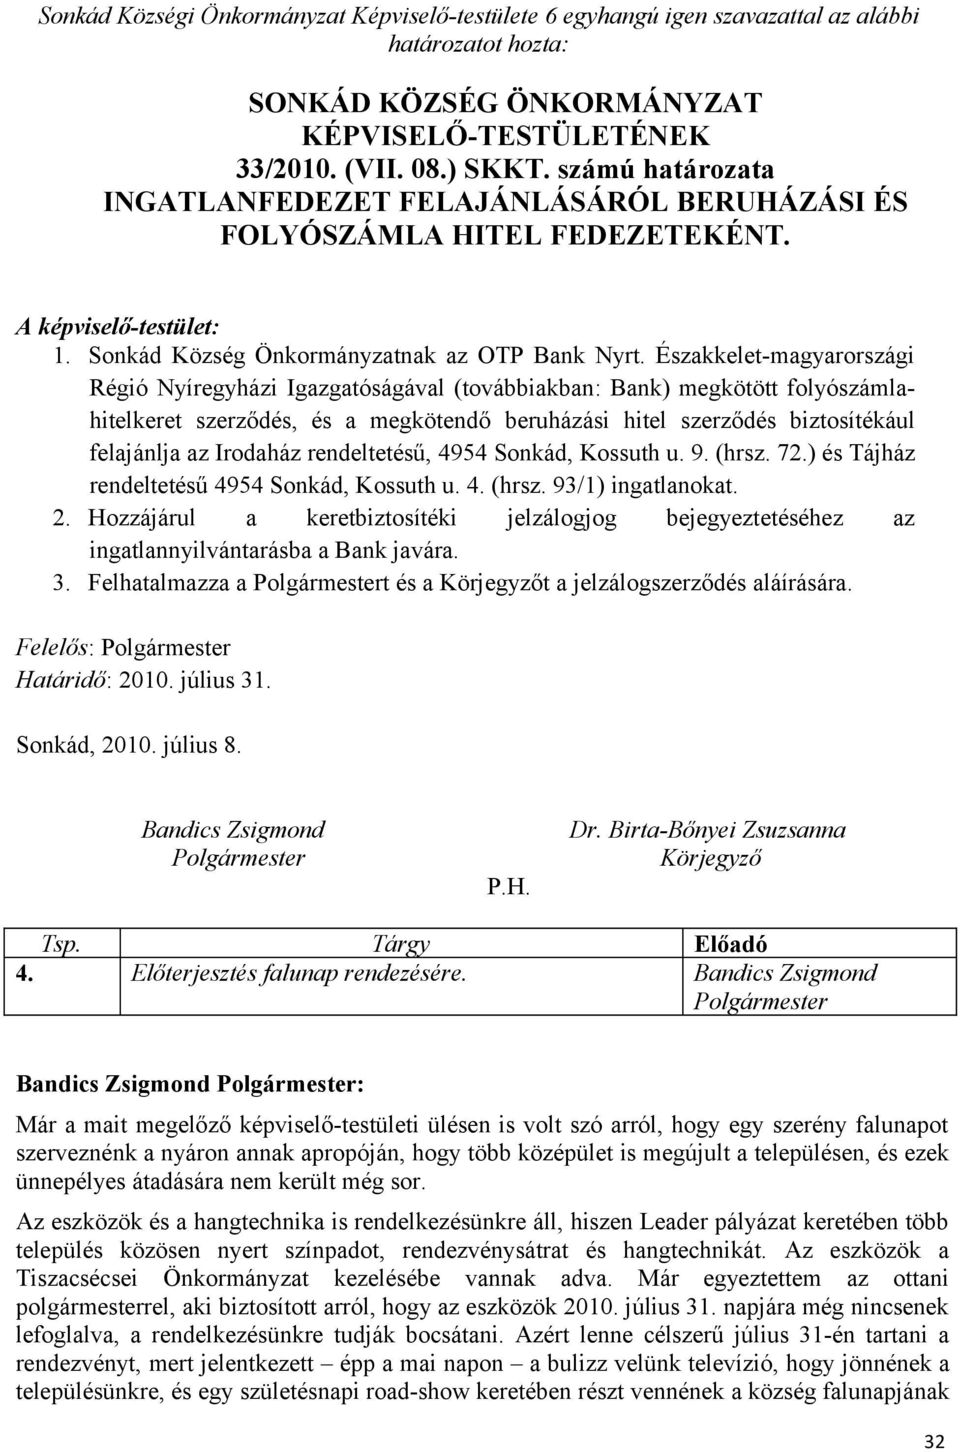 Északkelet-magyarországi Régió Nyíregyházi Igazgatóságával (továbbiakban: Bank) megkötött folyószámlahitelkeret szerződés, és a megkötendő beruházási hitel szerződés biztosítékául felajánlja az